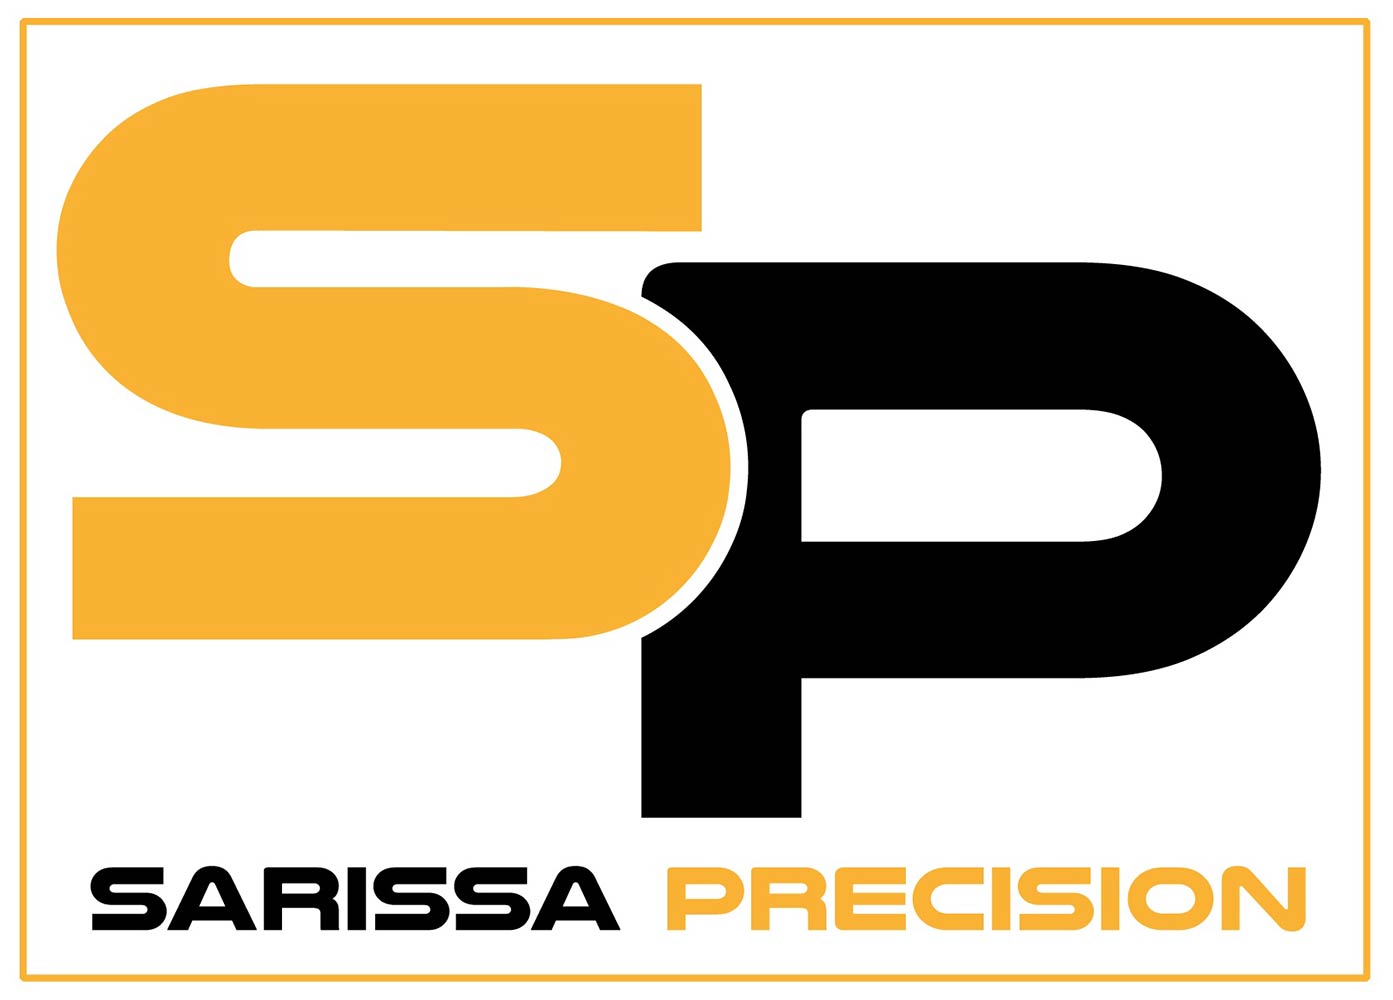 Sarissa Precision Limited